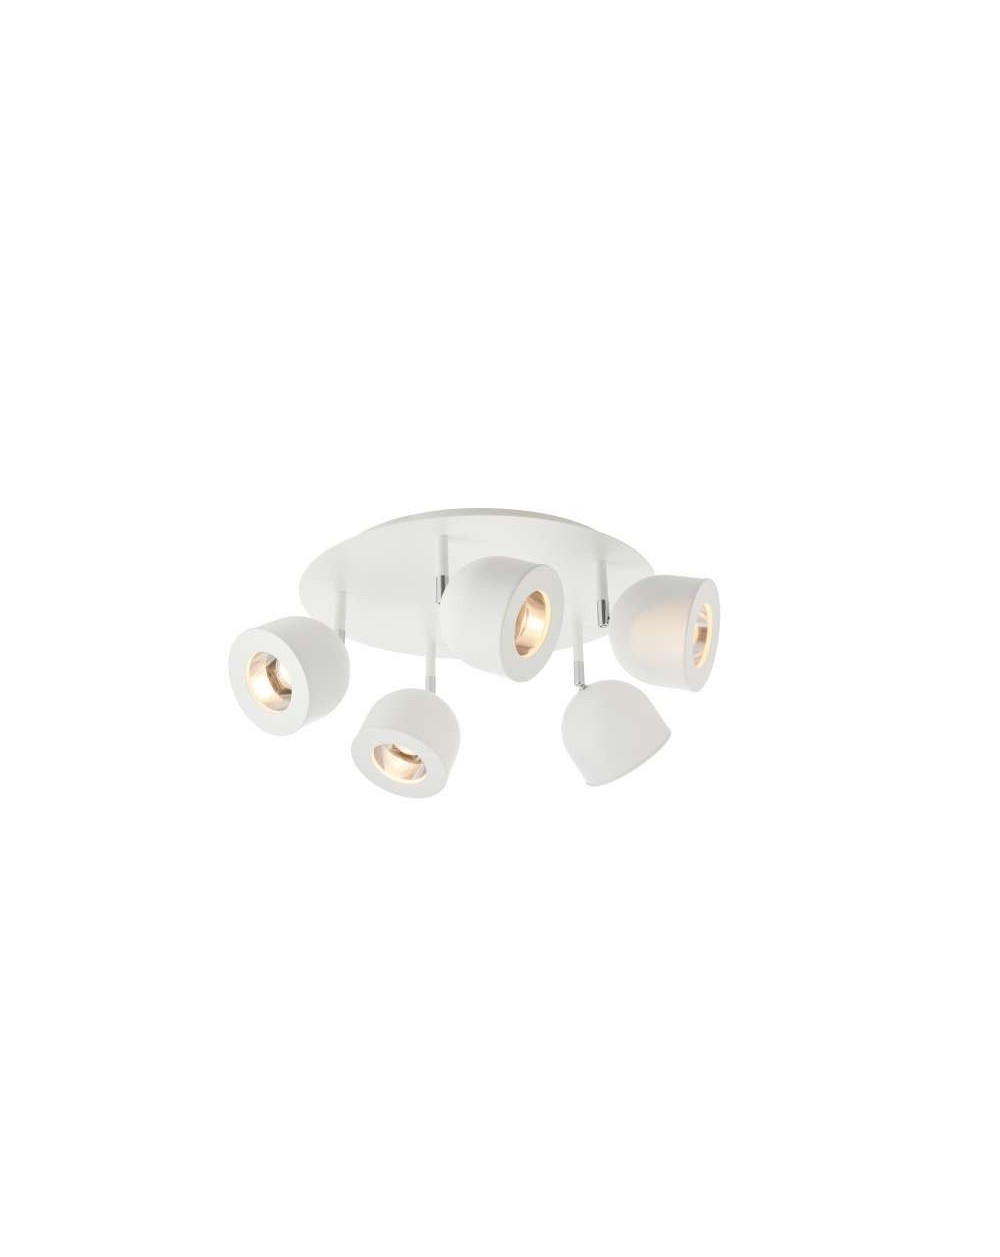 Lampa sufitowa PILAR 5 nowoczesna do kuchni przedpokoju - Kaspa plafon reflektorowy biały